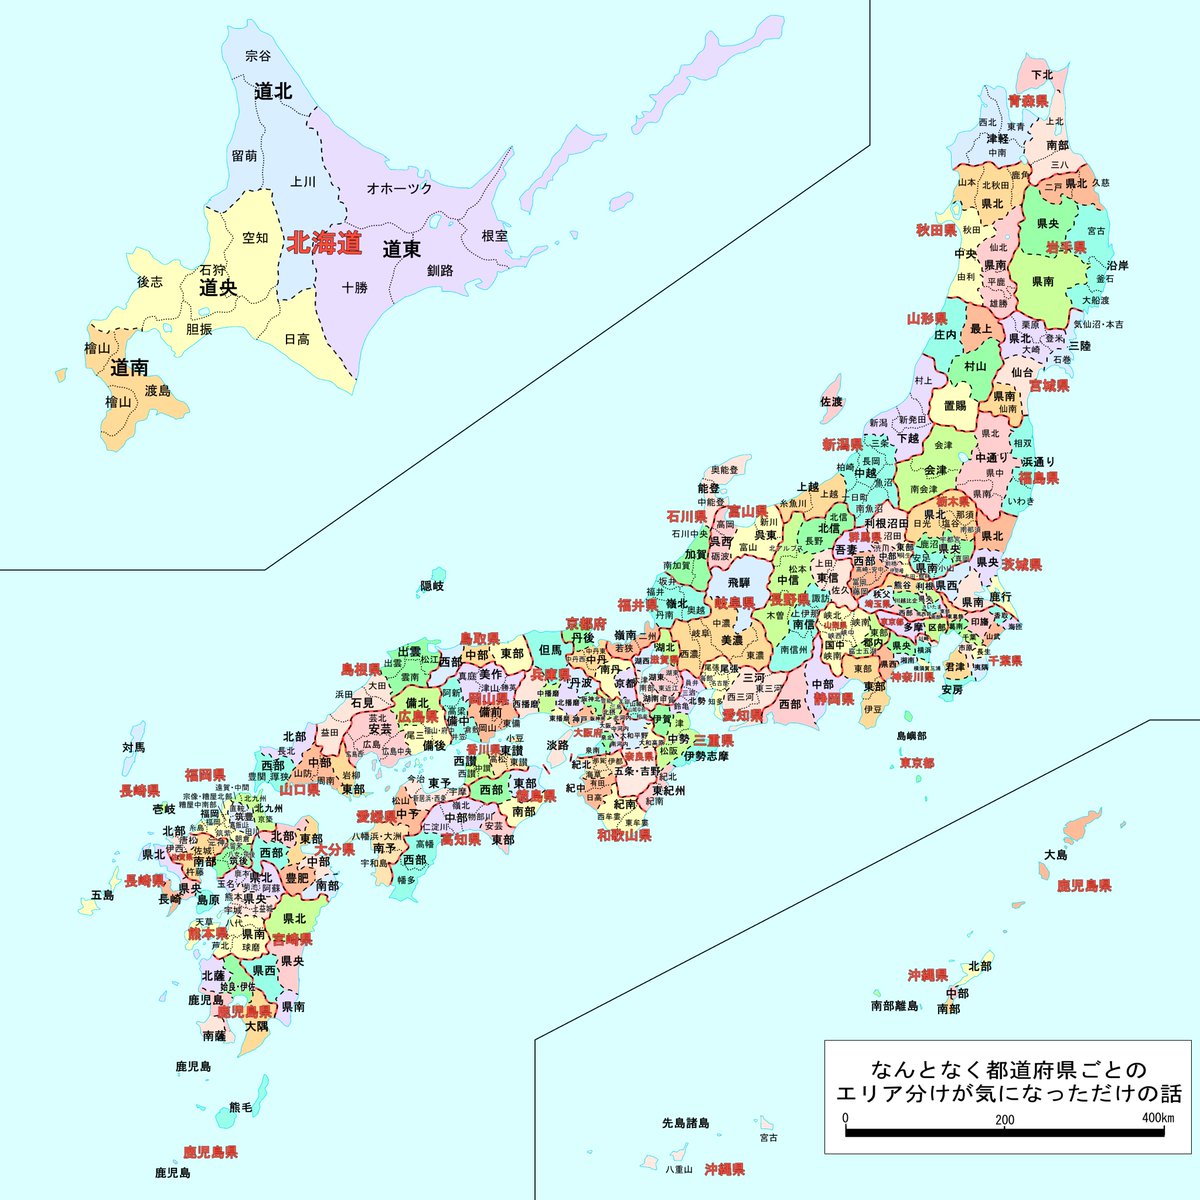 三河 や 南信州 や 県北 のような 都道府県のエリア分けしてみた日本地図がとても参考になる Togetter